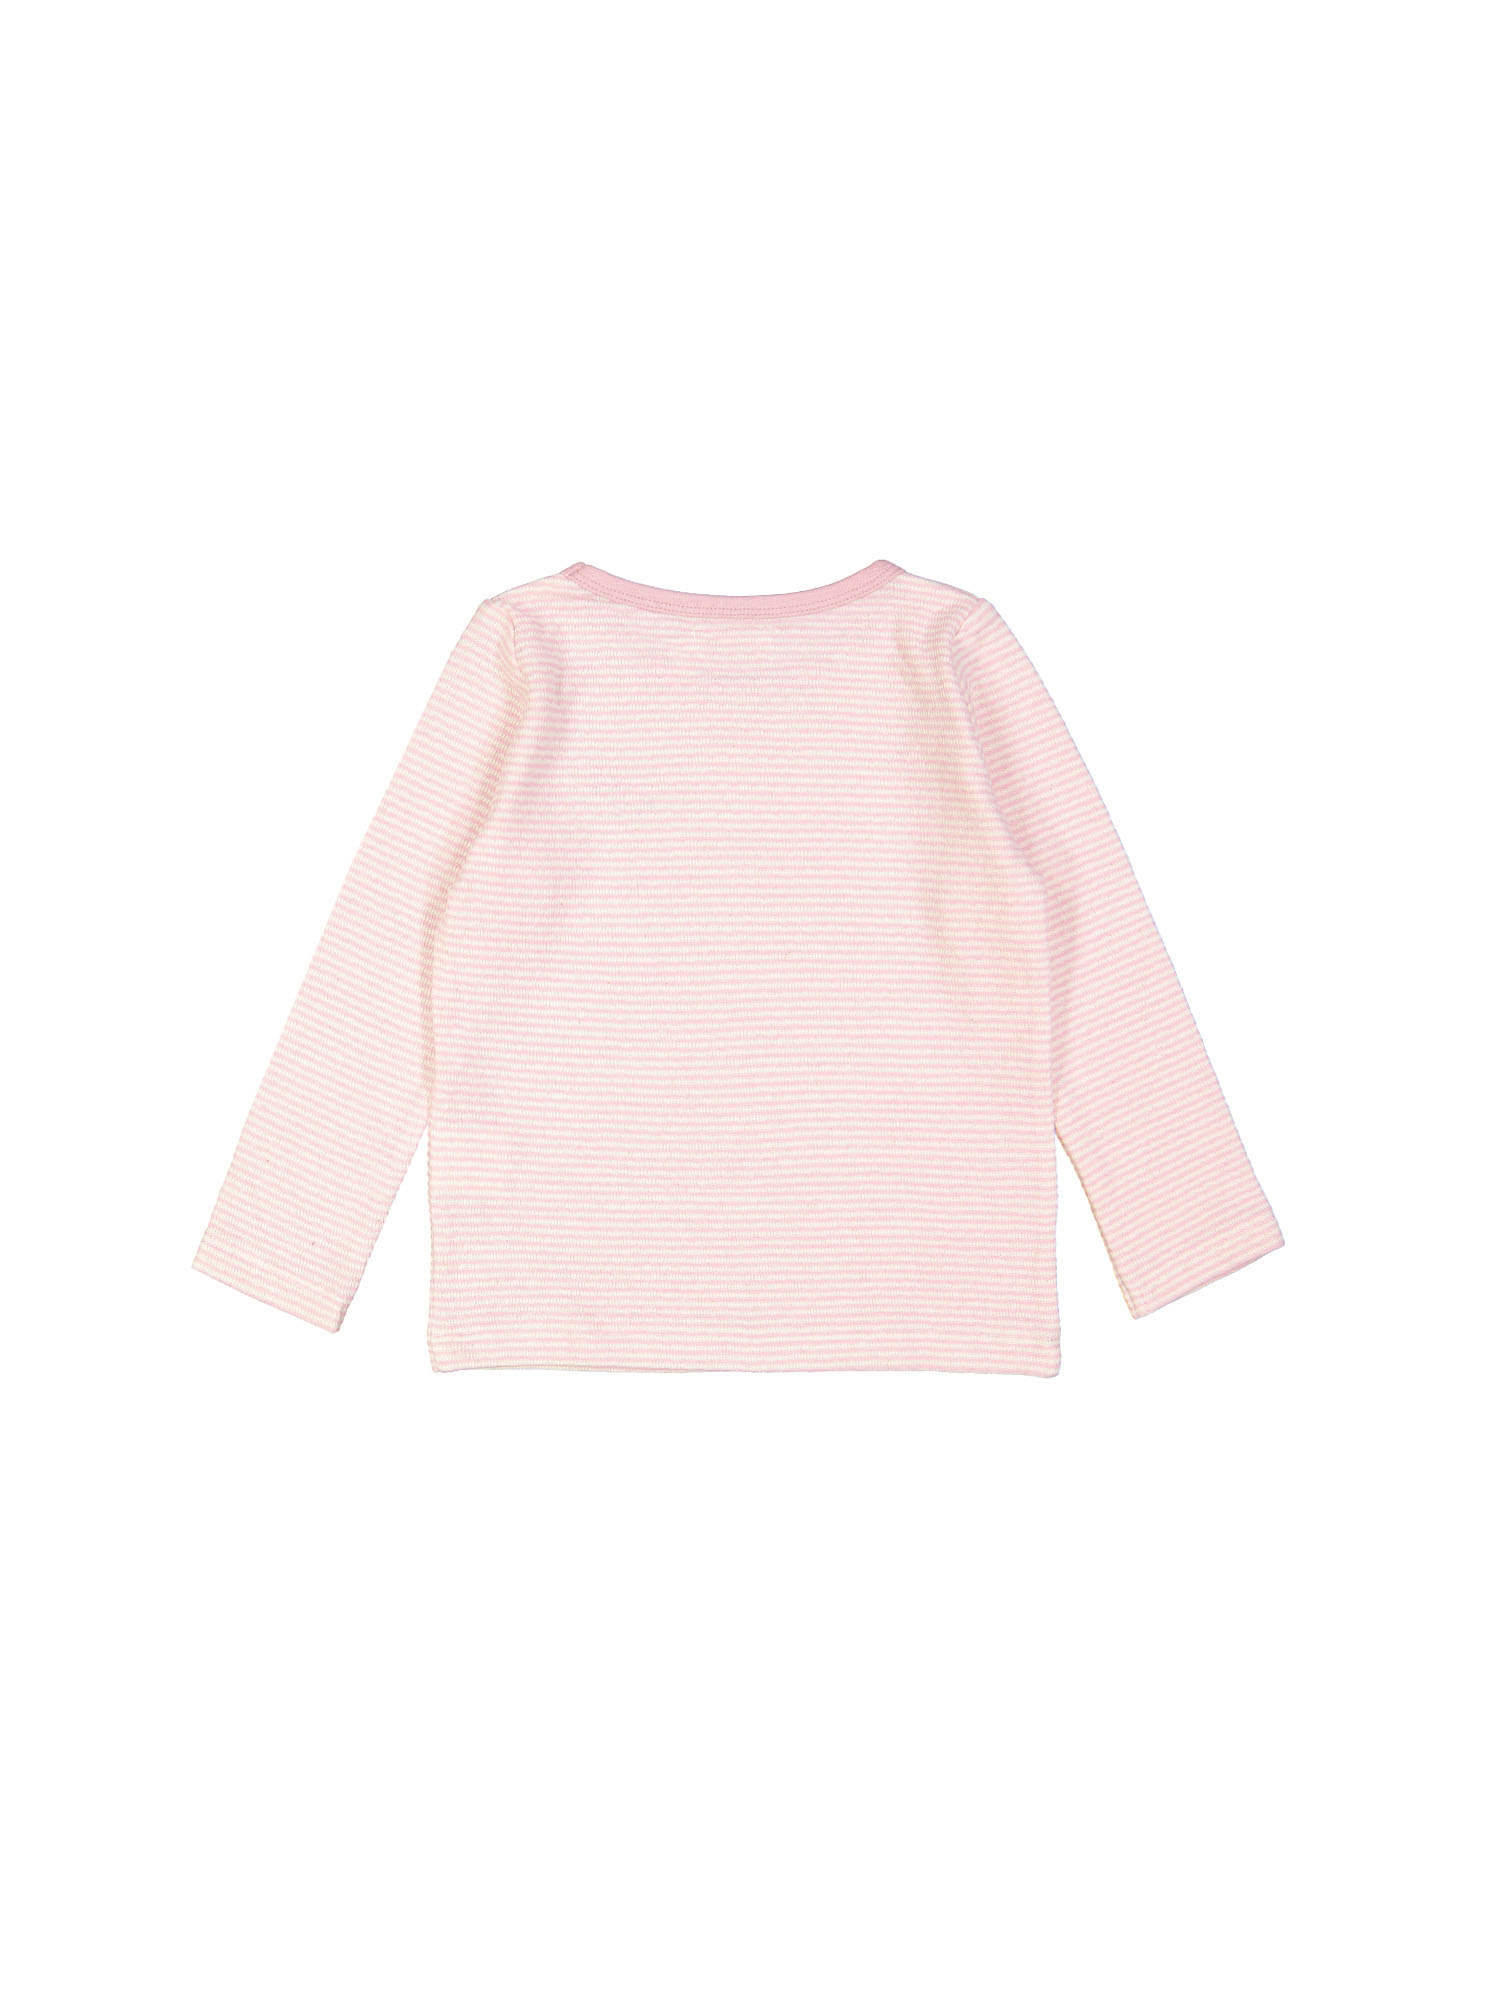 t-shirt streep unicorn roze 10j